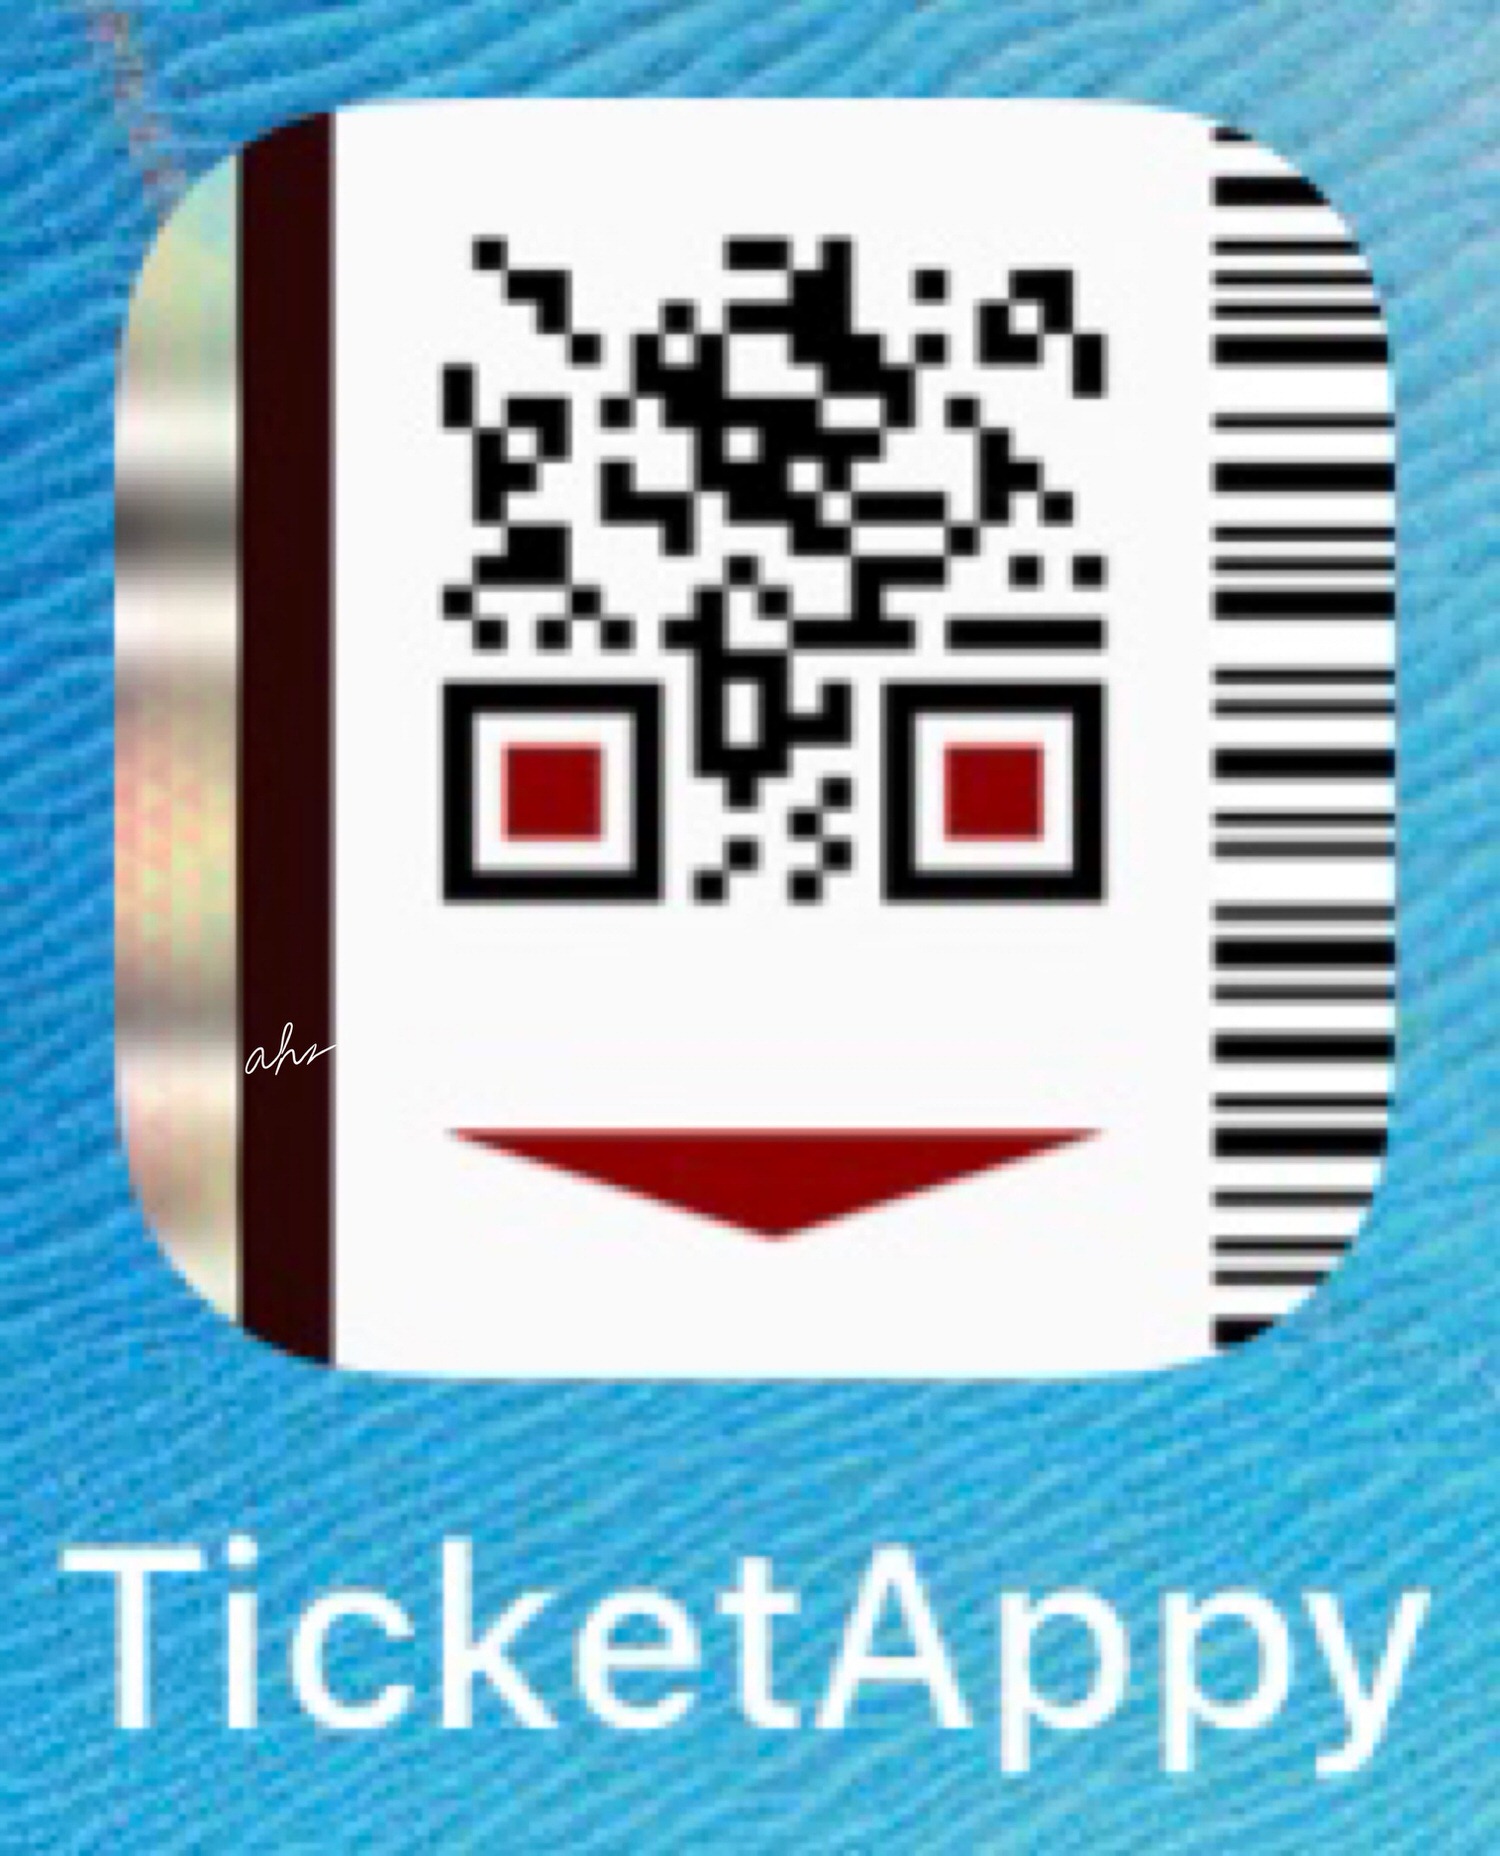 TicketAppy Logo